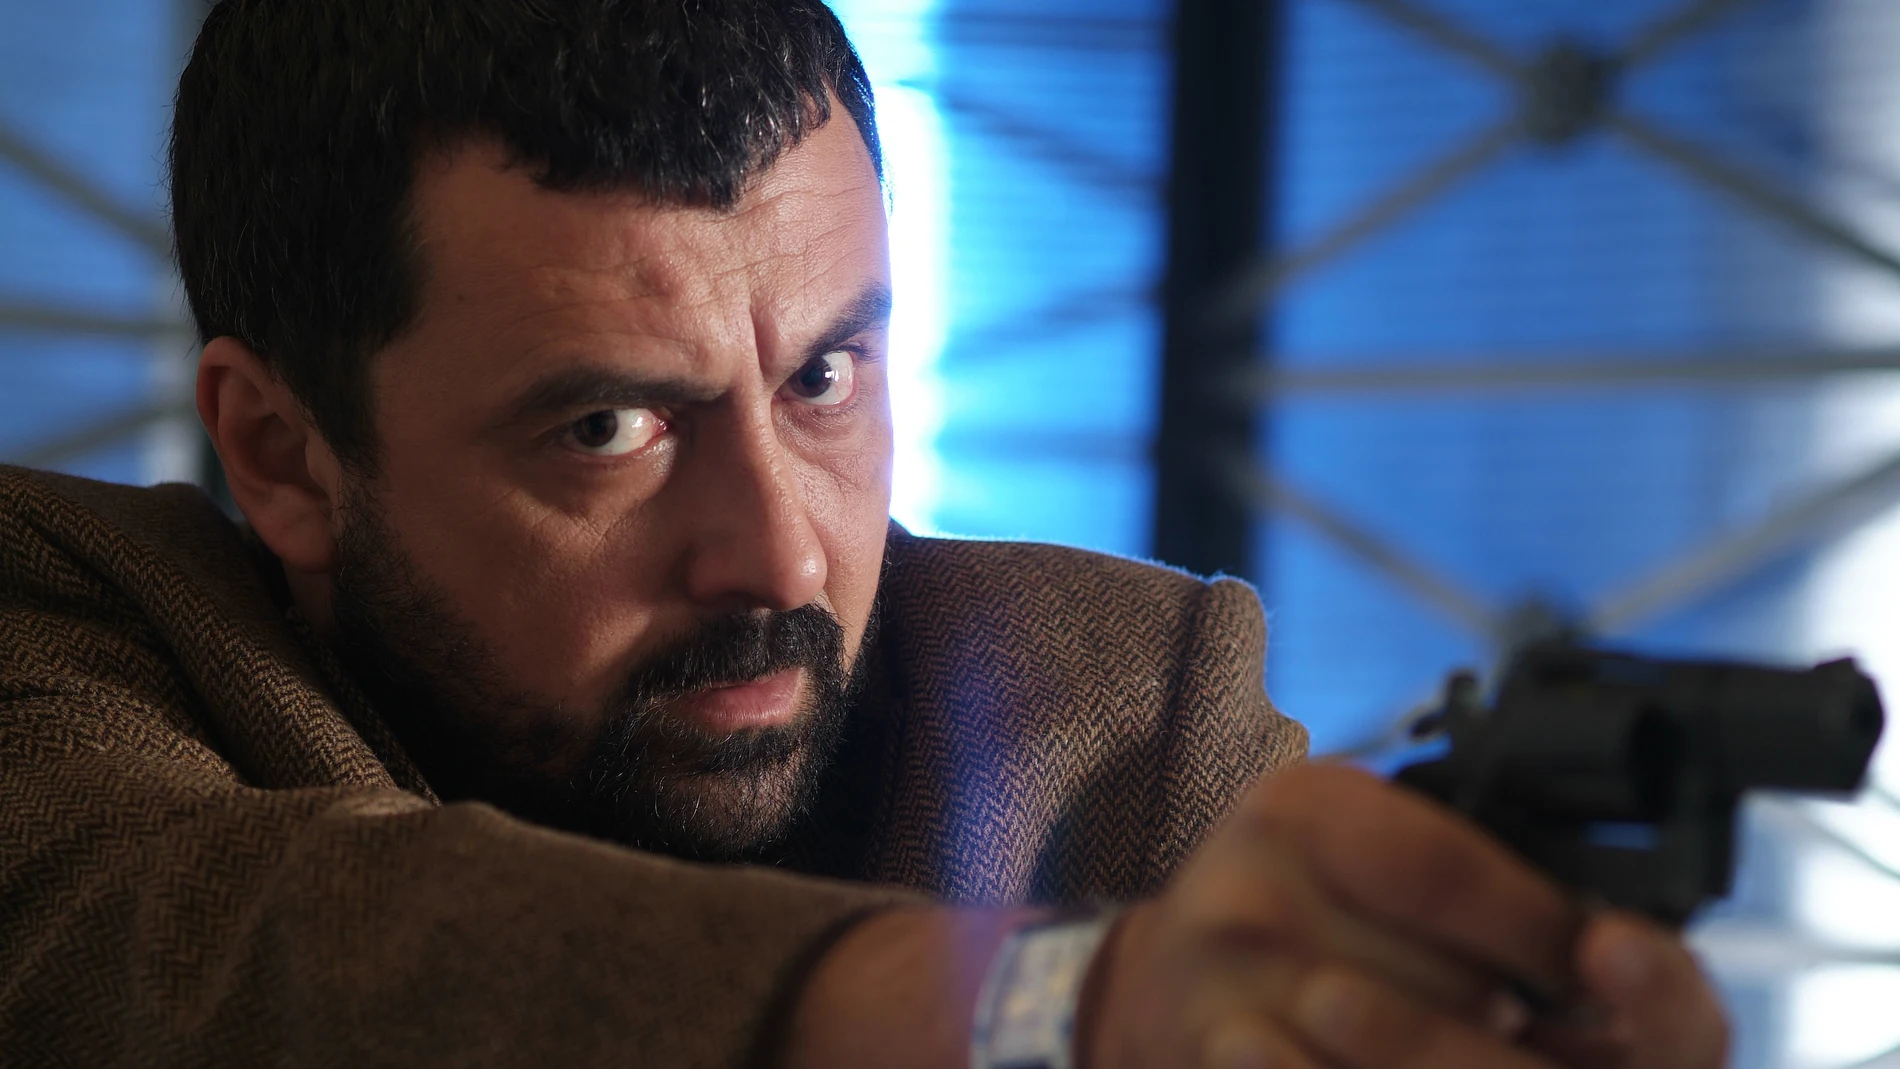 Antena 3 prepara una nueva temporada de 'Los hombres de Paco' con un giro radical en su trama